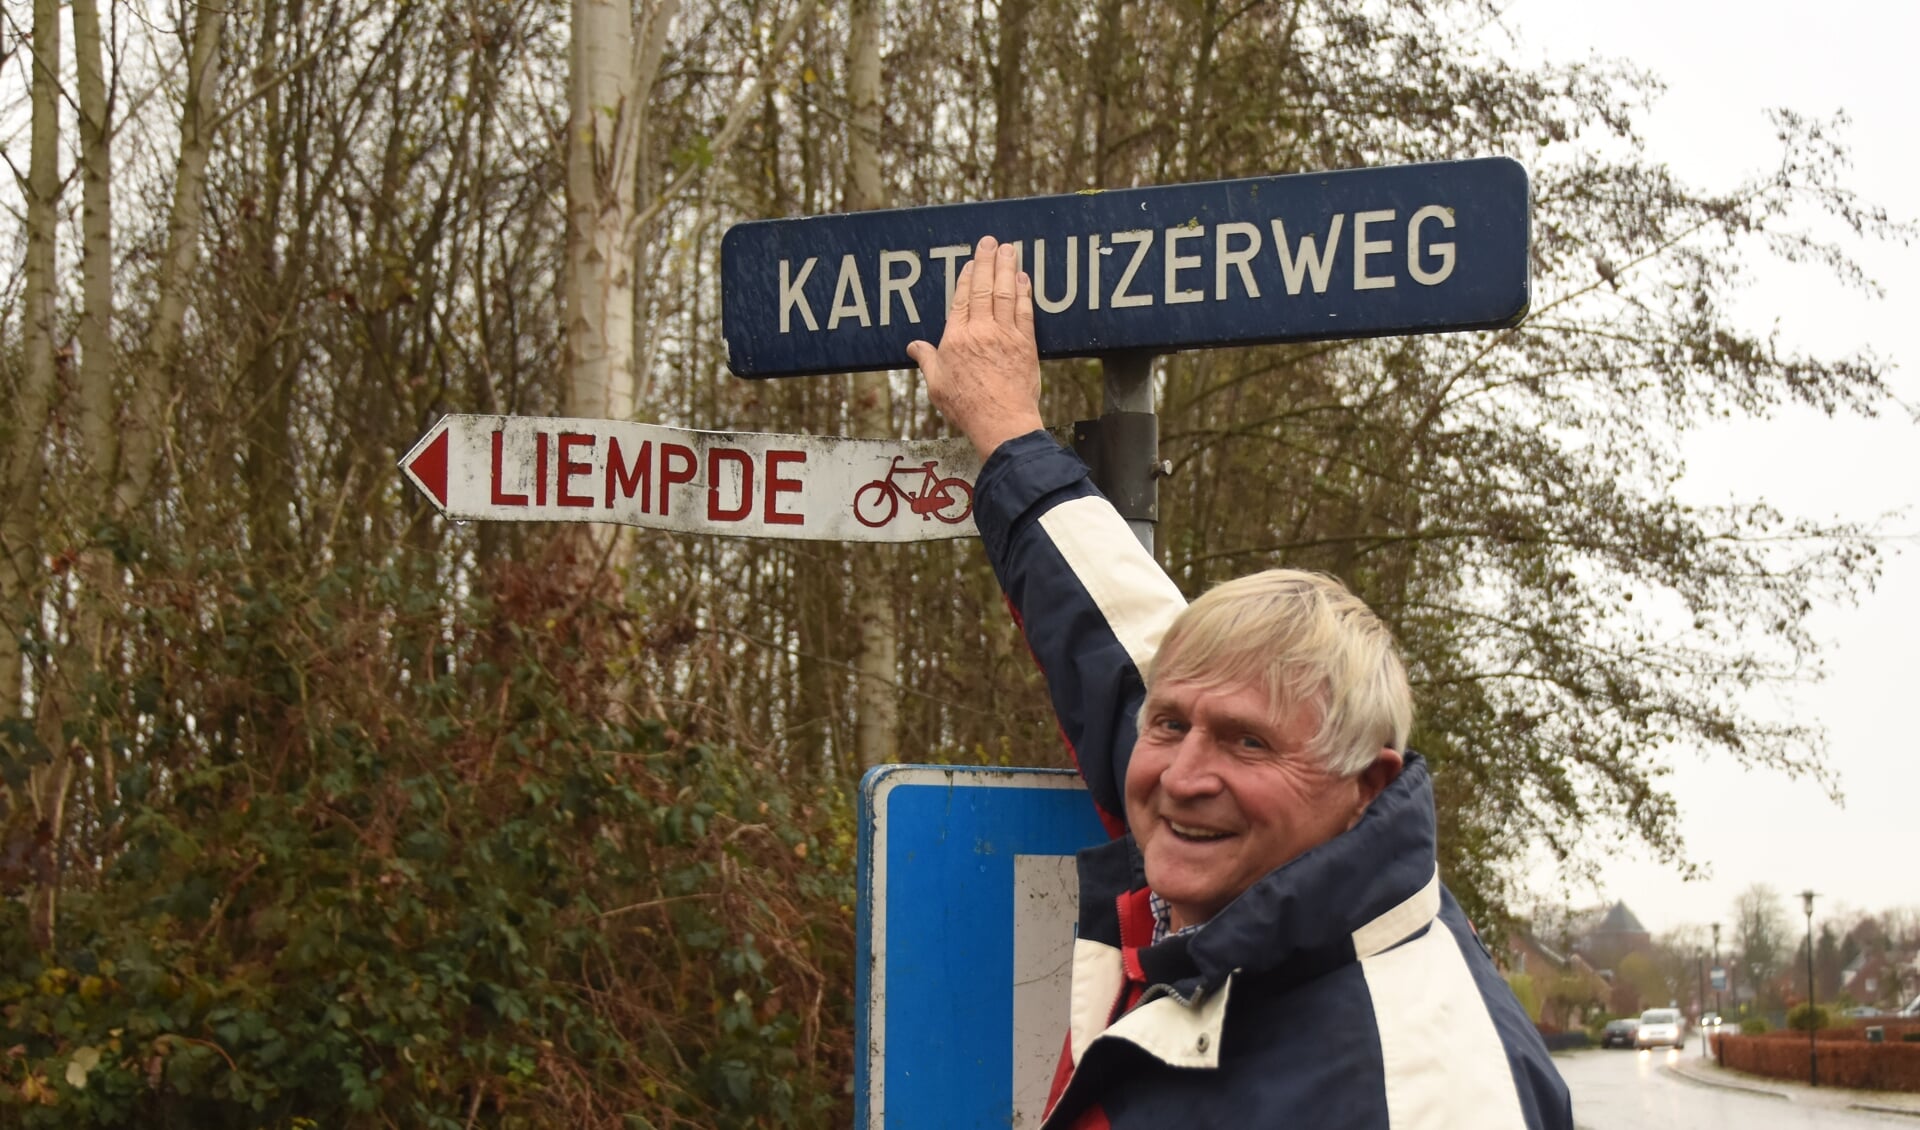 Henk Prins vindt de Karthuizerweg een heel toepasselijke naam, maar historisch was Kartuizerweg zonder 'h' beter geweest 